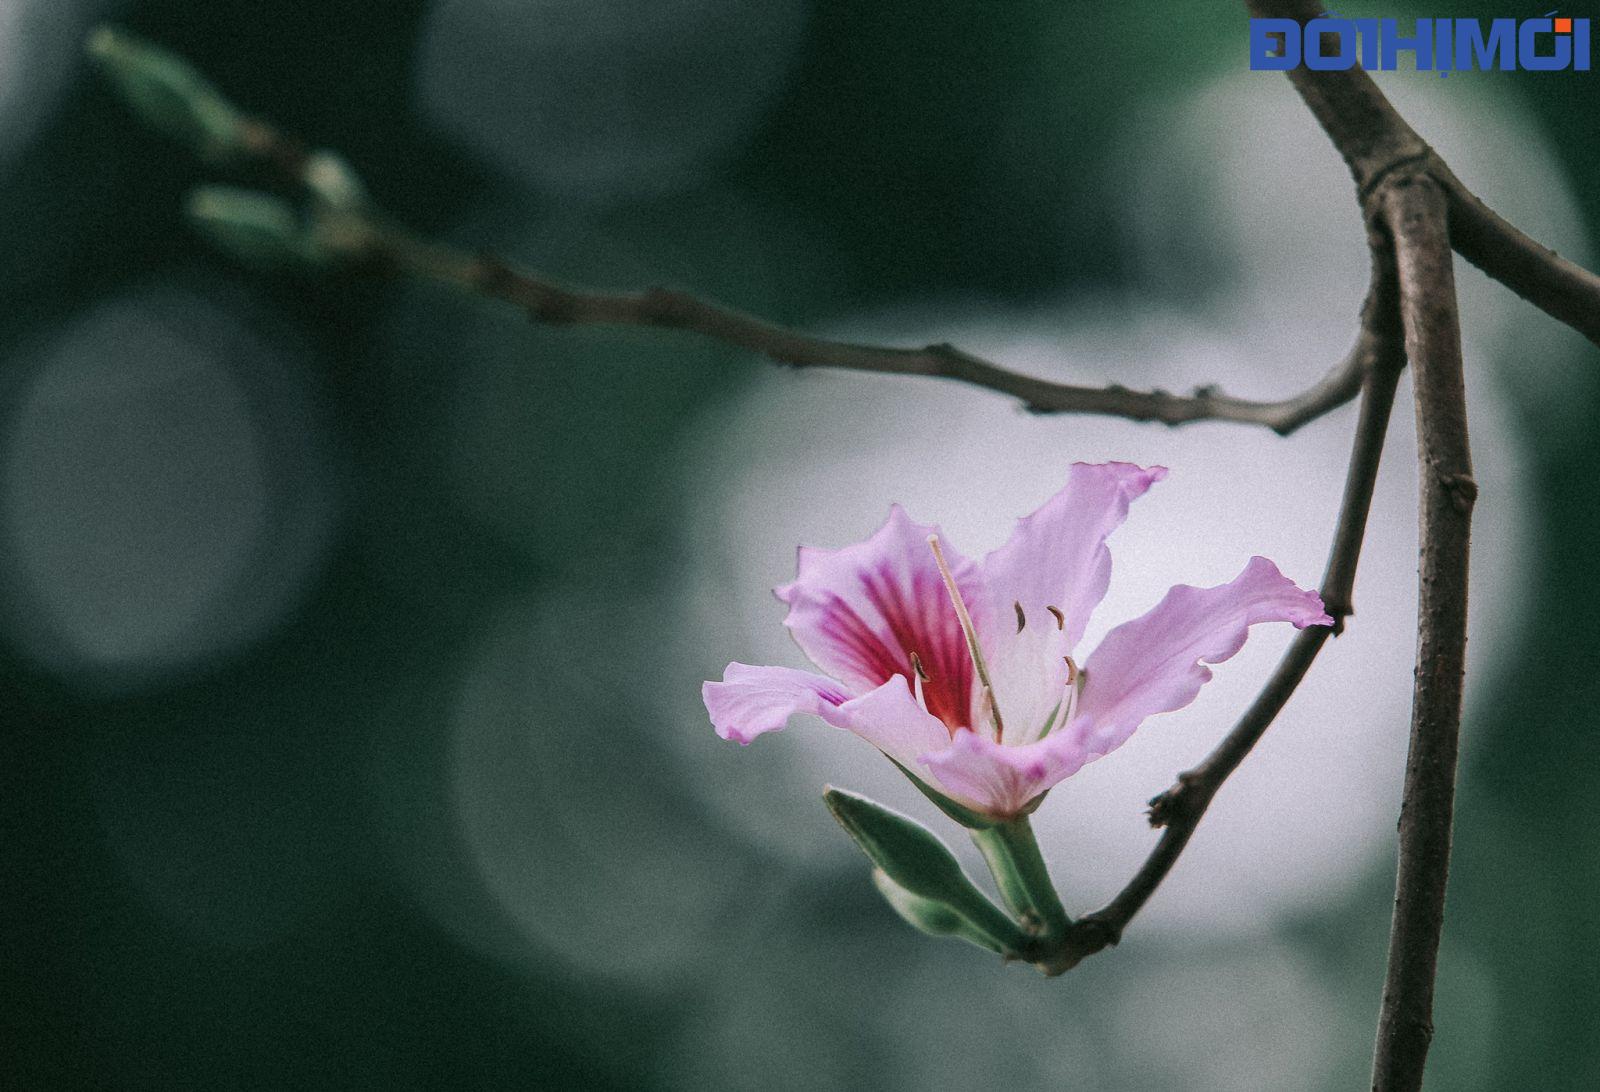 Cây hoa ban còn có tên gọi là móng bò sọc, có nguồn gốc ở miền đông nam châu Á, từ miền nam Trung Quốc kéo dài về phía tây tới Ấn Độ. Thông thường chỉ gọi là cây ban, tuy nhiên, do có nhiều loài cùng chi cũng có tên là ban nên cây hoa ban thường được gọi theo màu hoa của nó, như hoa ban trắng, ban hồng, ban tím.